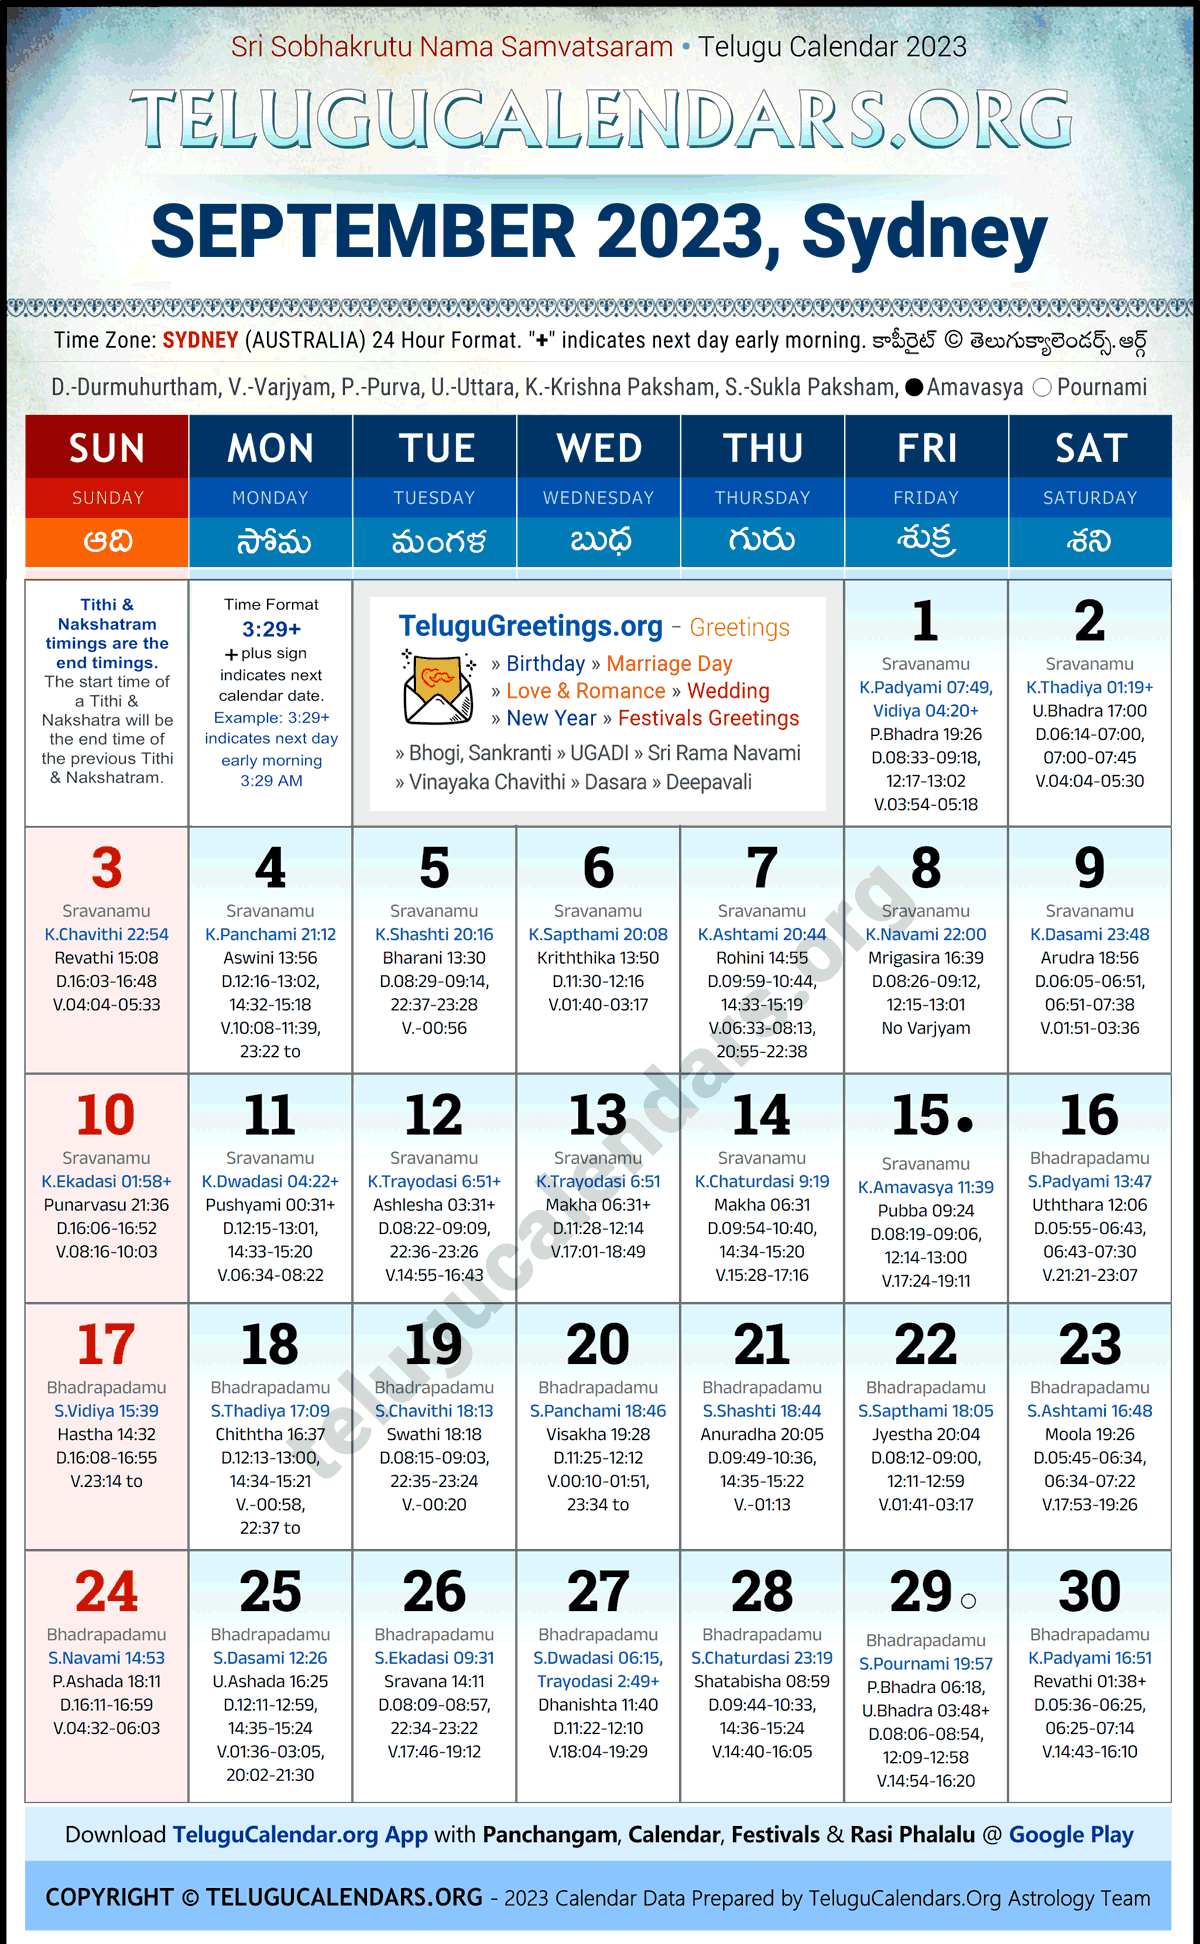 Telugu Calendar 2023 September Festivals for Sydney